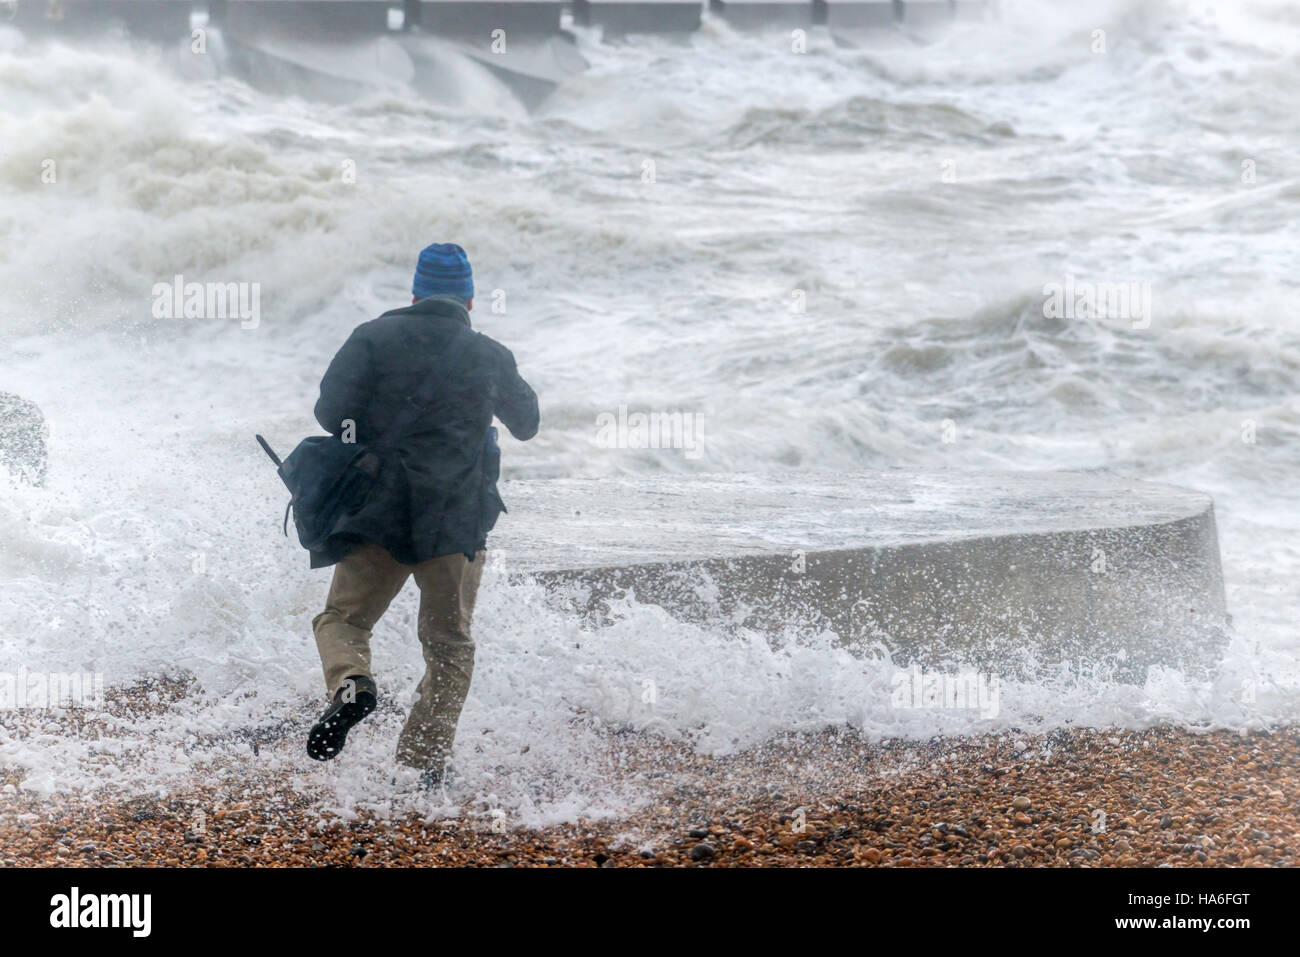 Waves crashing to shore at Brighton Marina during a storm Stock Photo